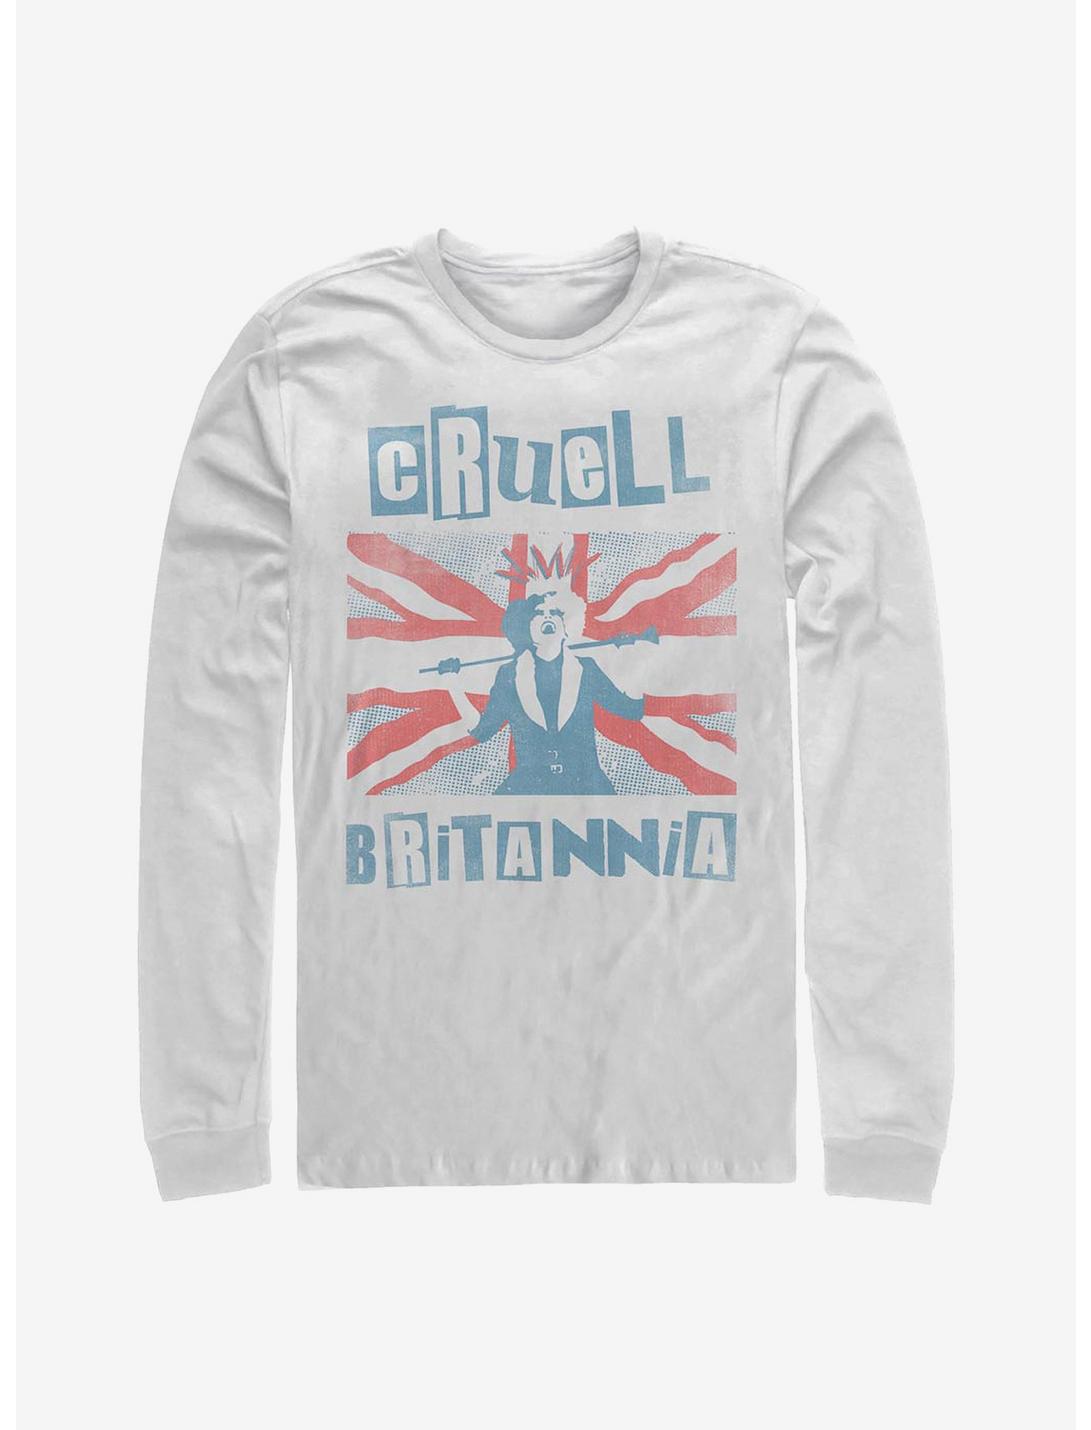 Disney Cruella Cruell Britannia Long-Sleeve T-Shirt, WHITE, hi-res